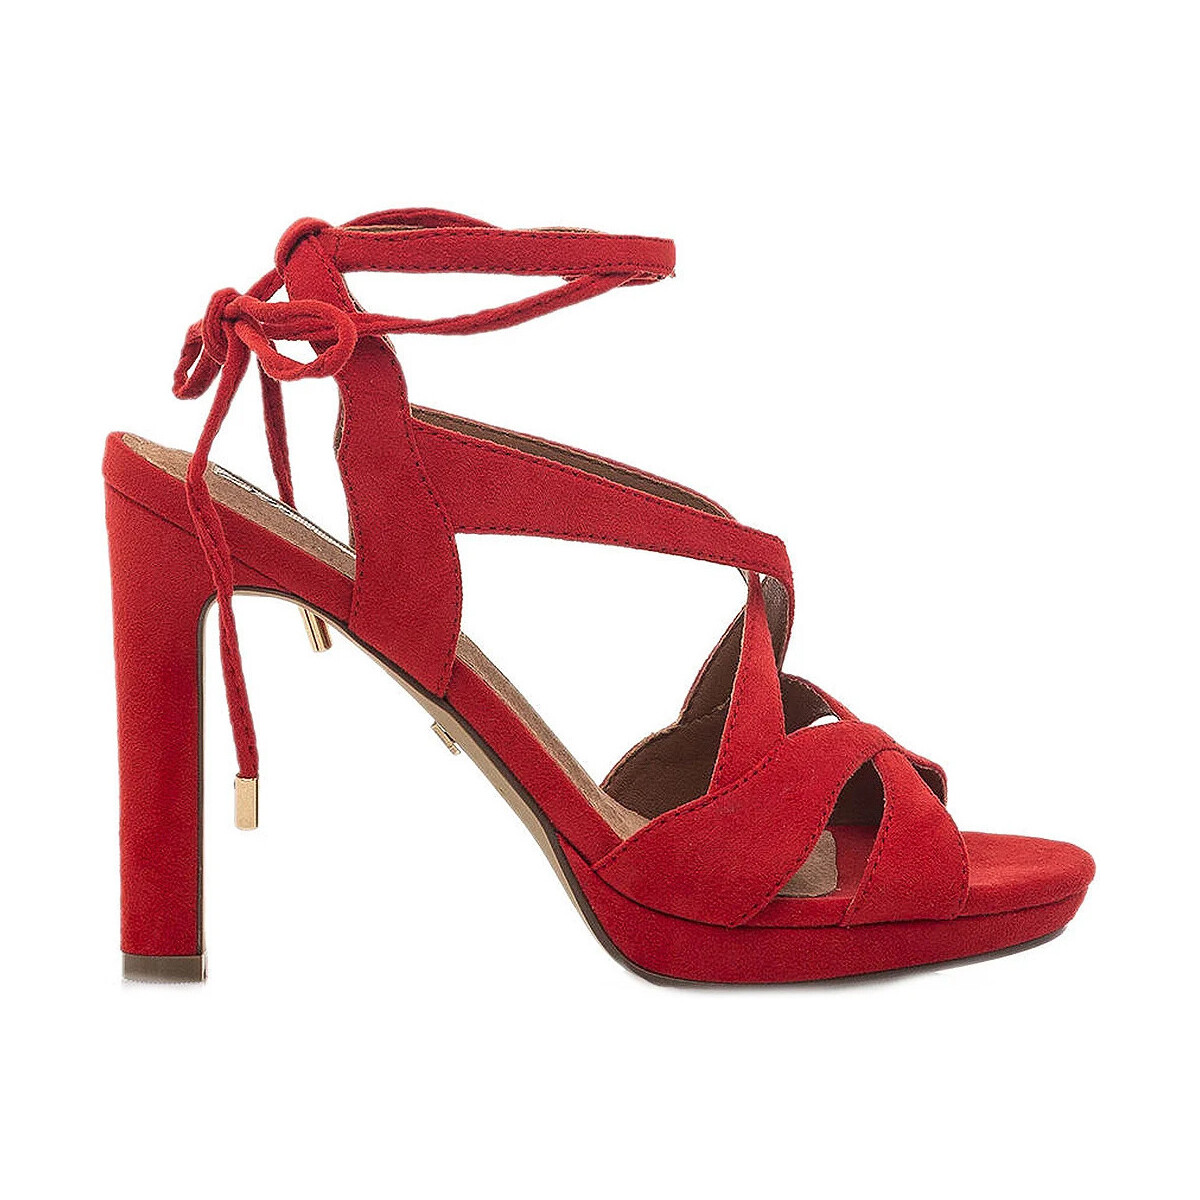 Zapatos Mujer Zapatos de tacón Maria Mare S DE  CON TACÓN 68367 Rojo